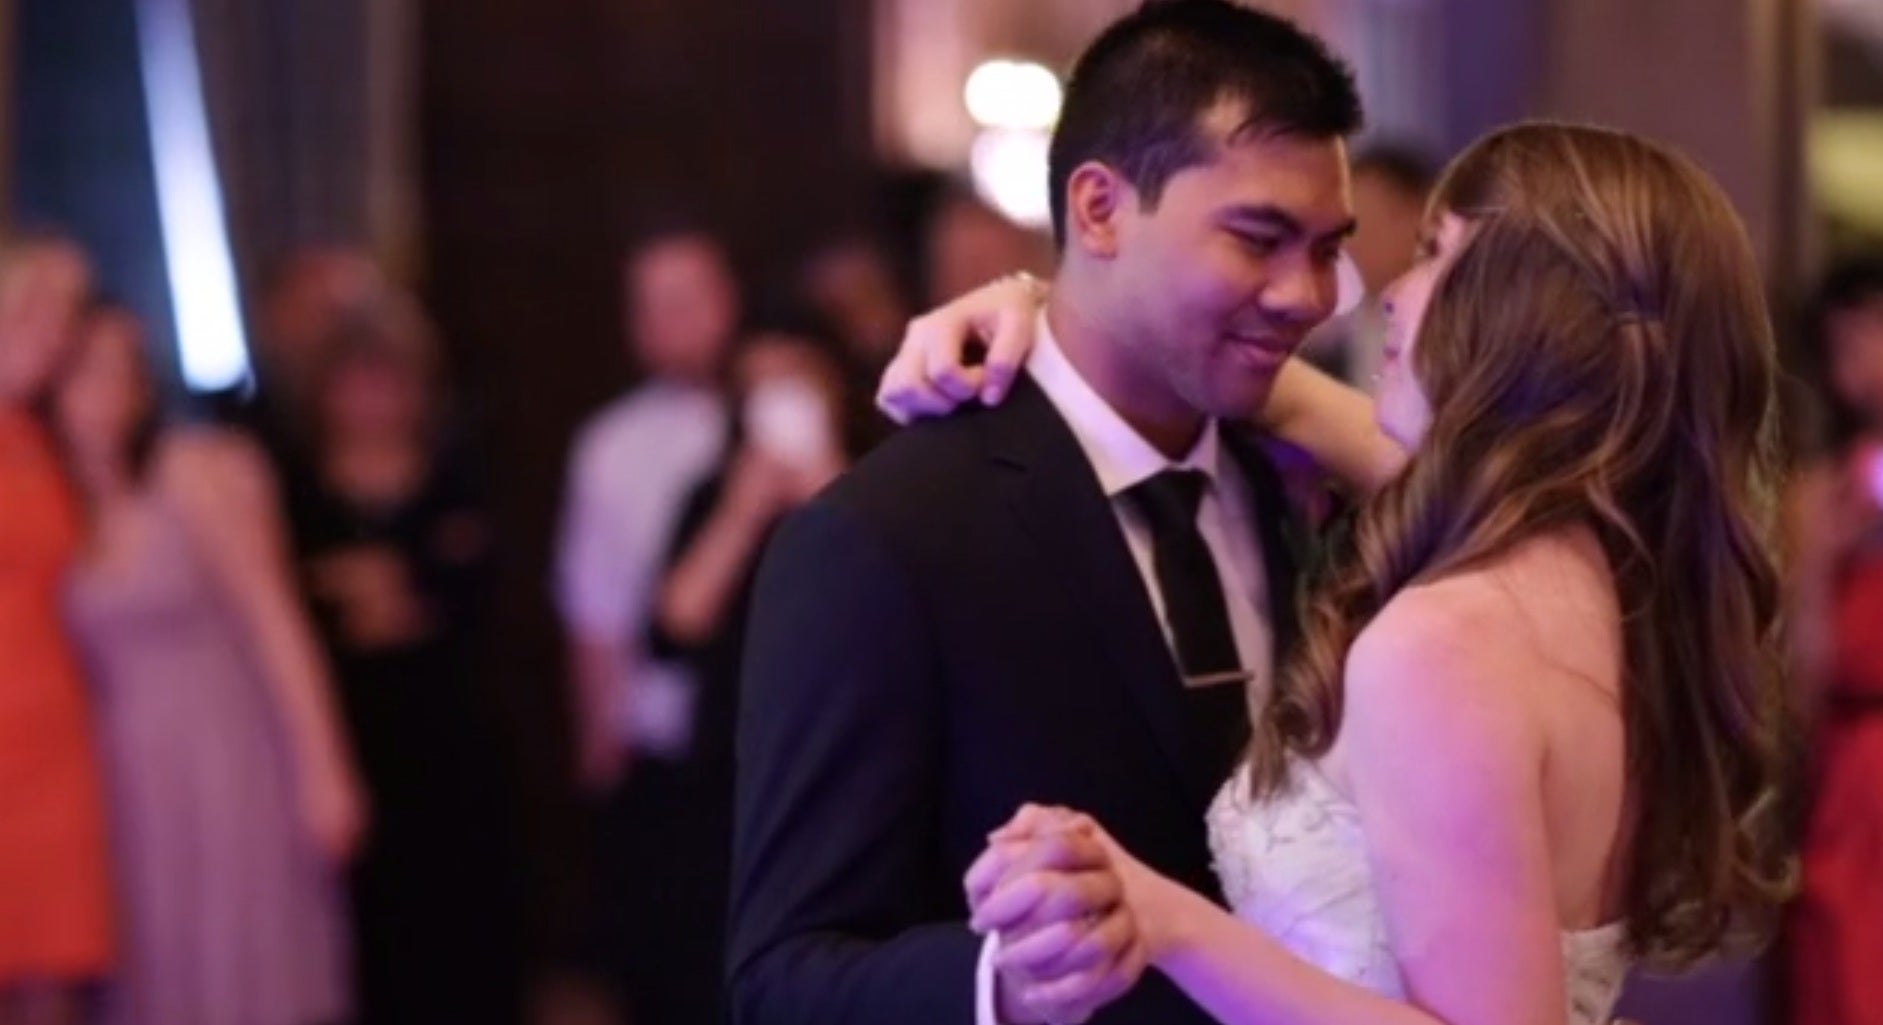 Solomon Chau and Jennifer Carter enjoy their first dance on their wedding day